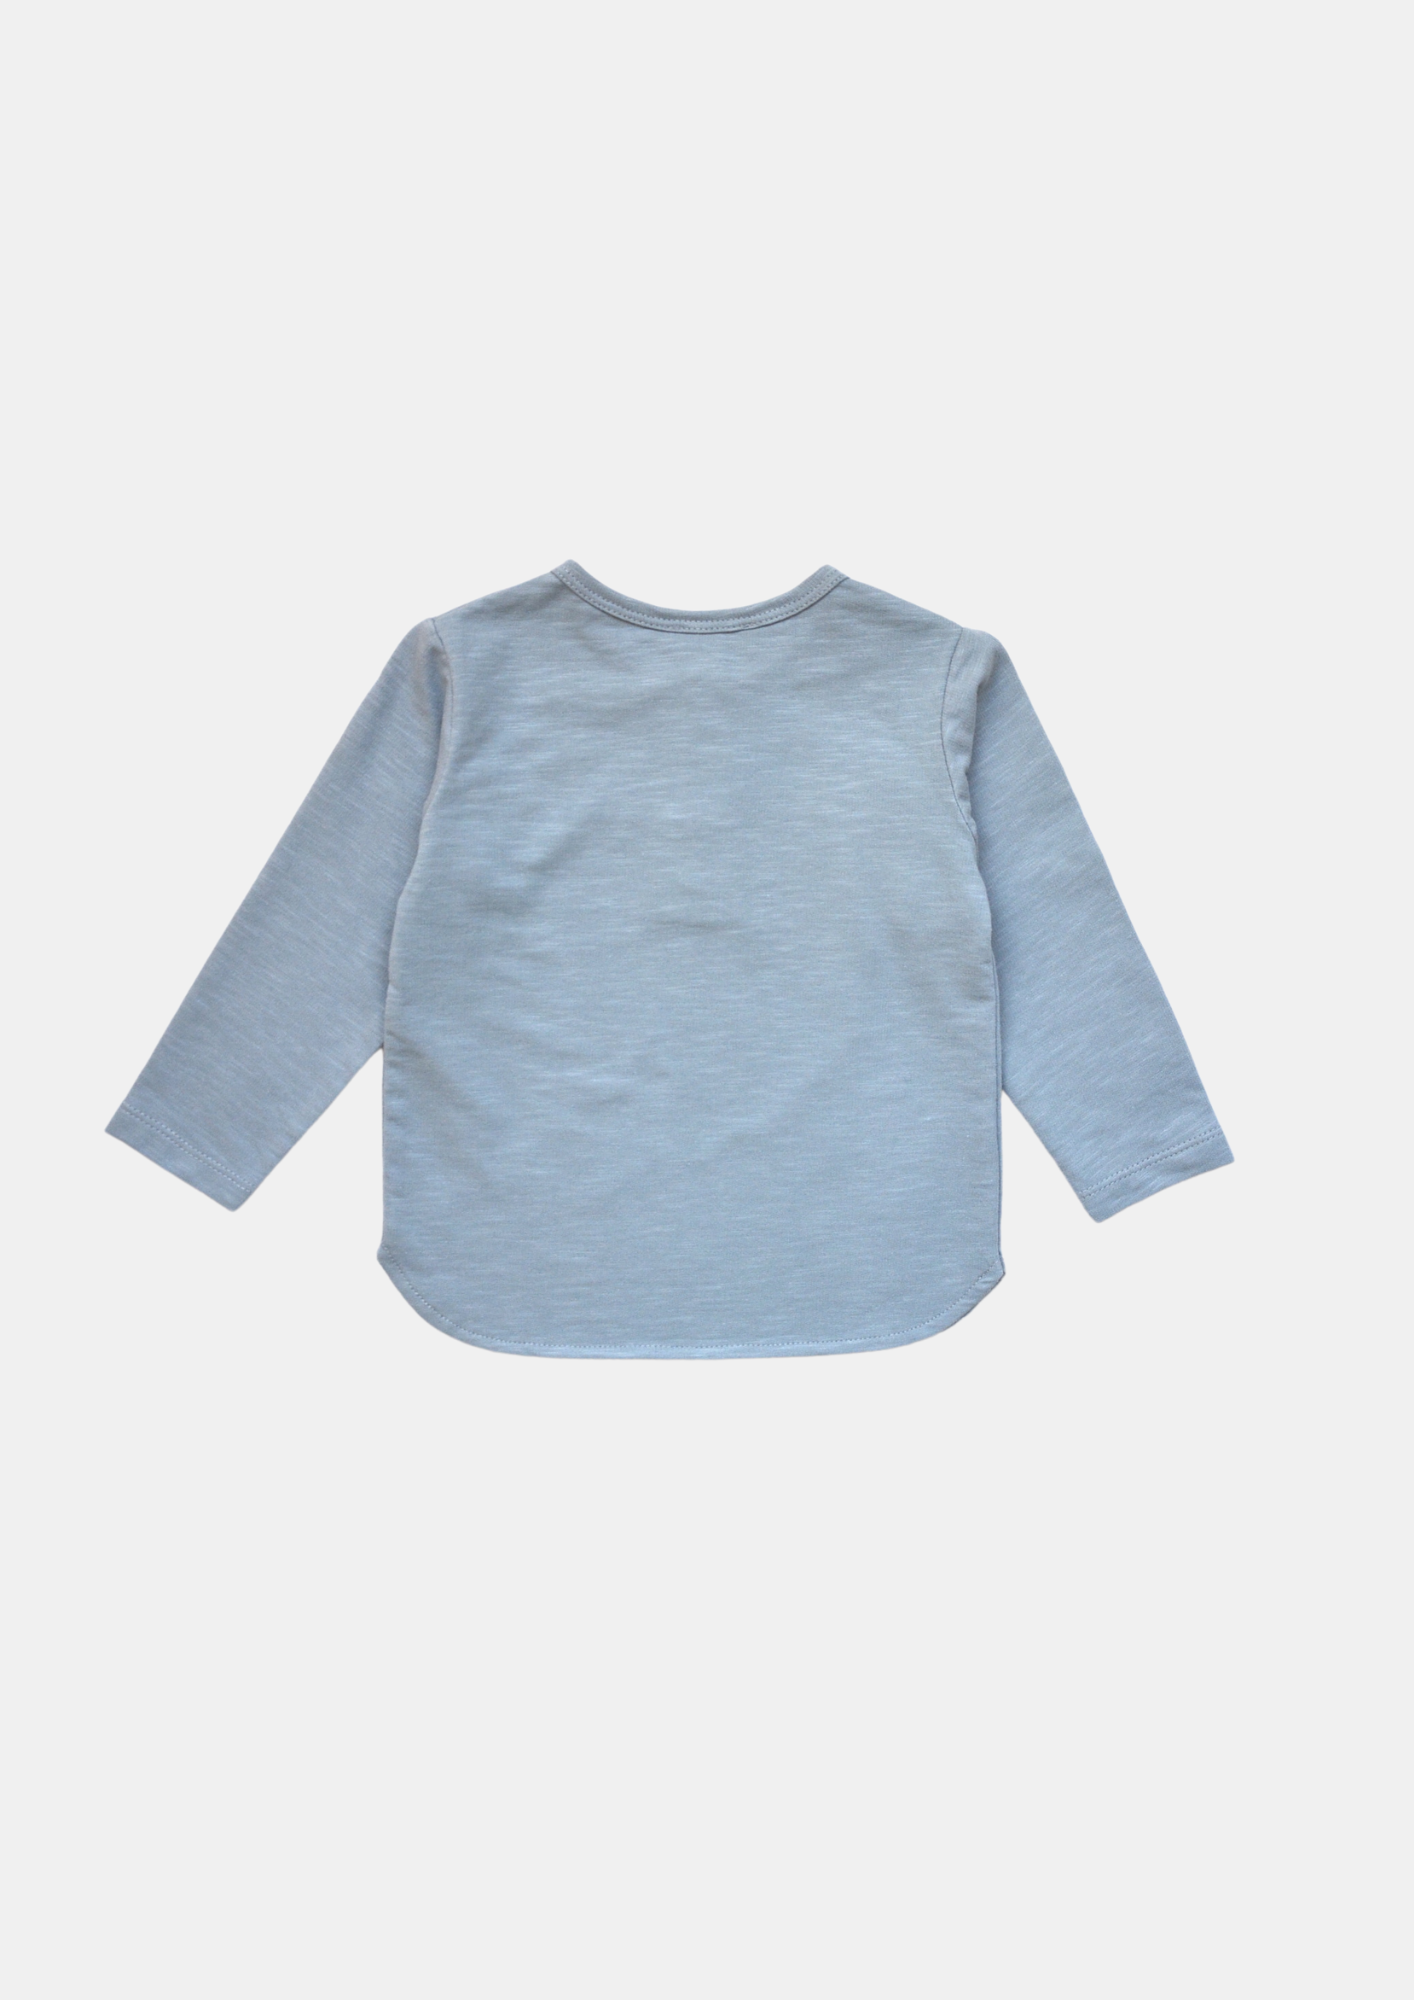 Baby / Kid Long Sleeves T-shirt: 3-4Y